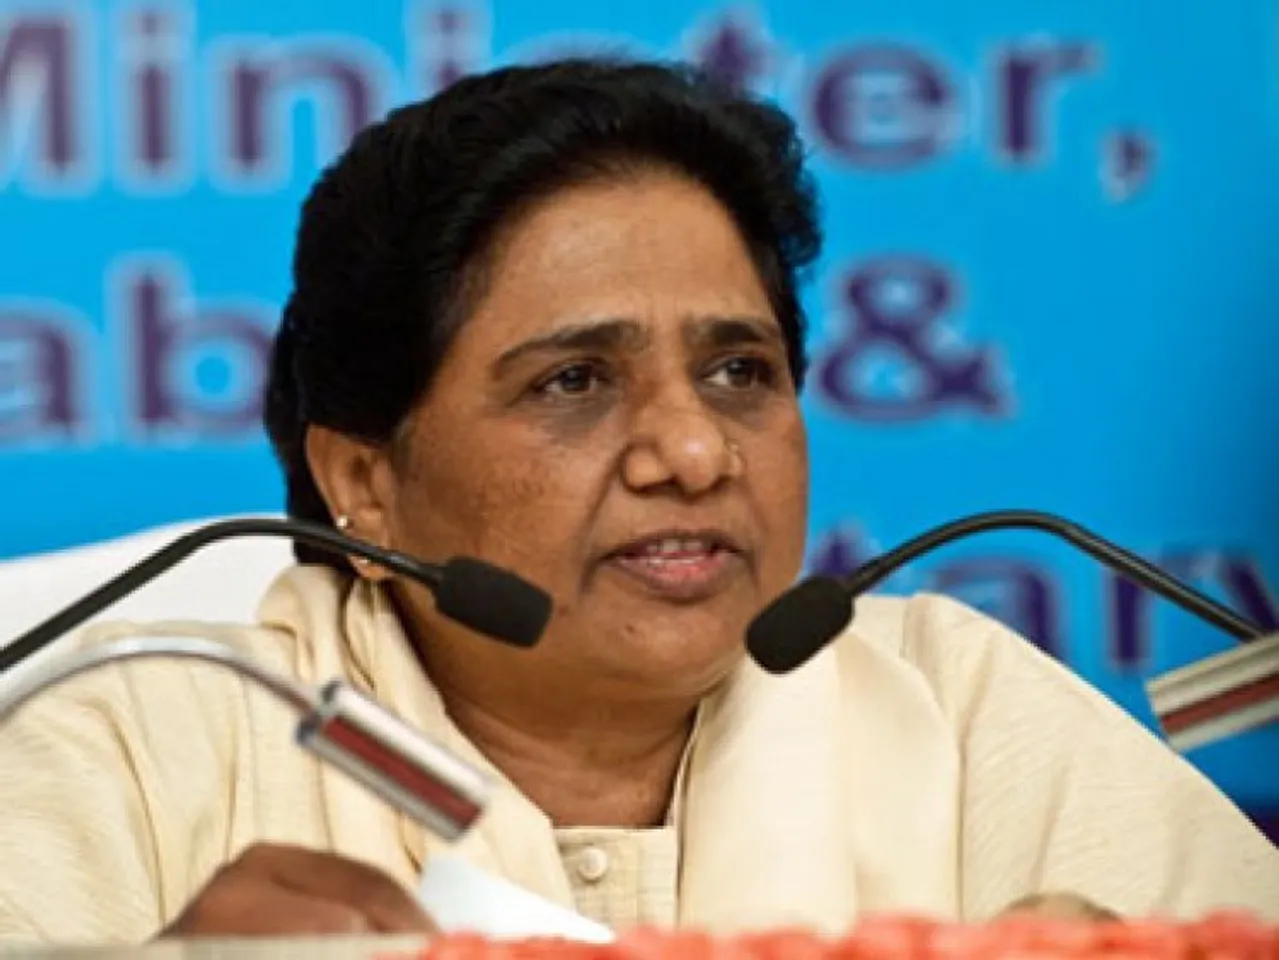 BSP supremo Mayawati (File photo)